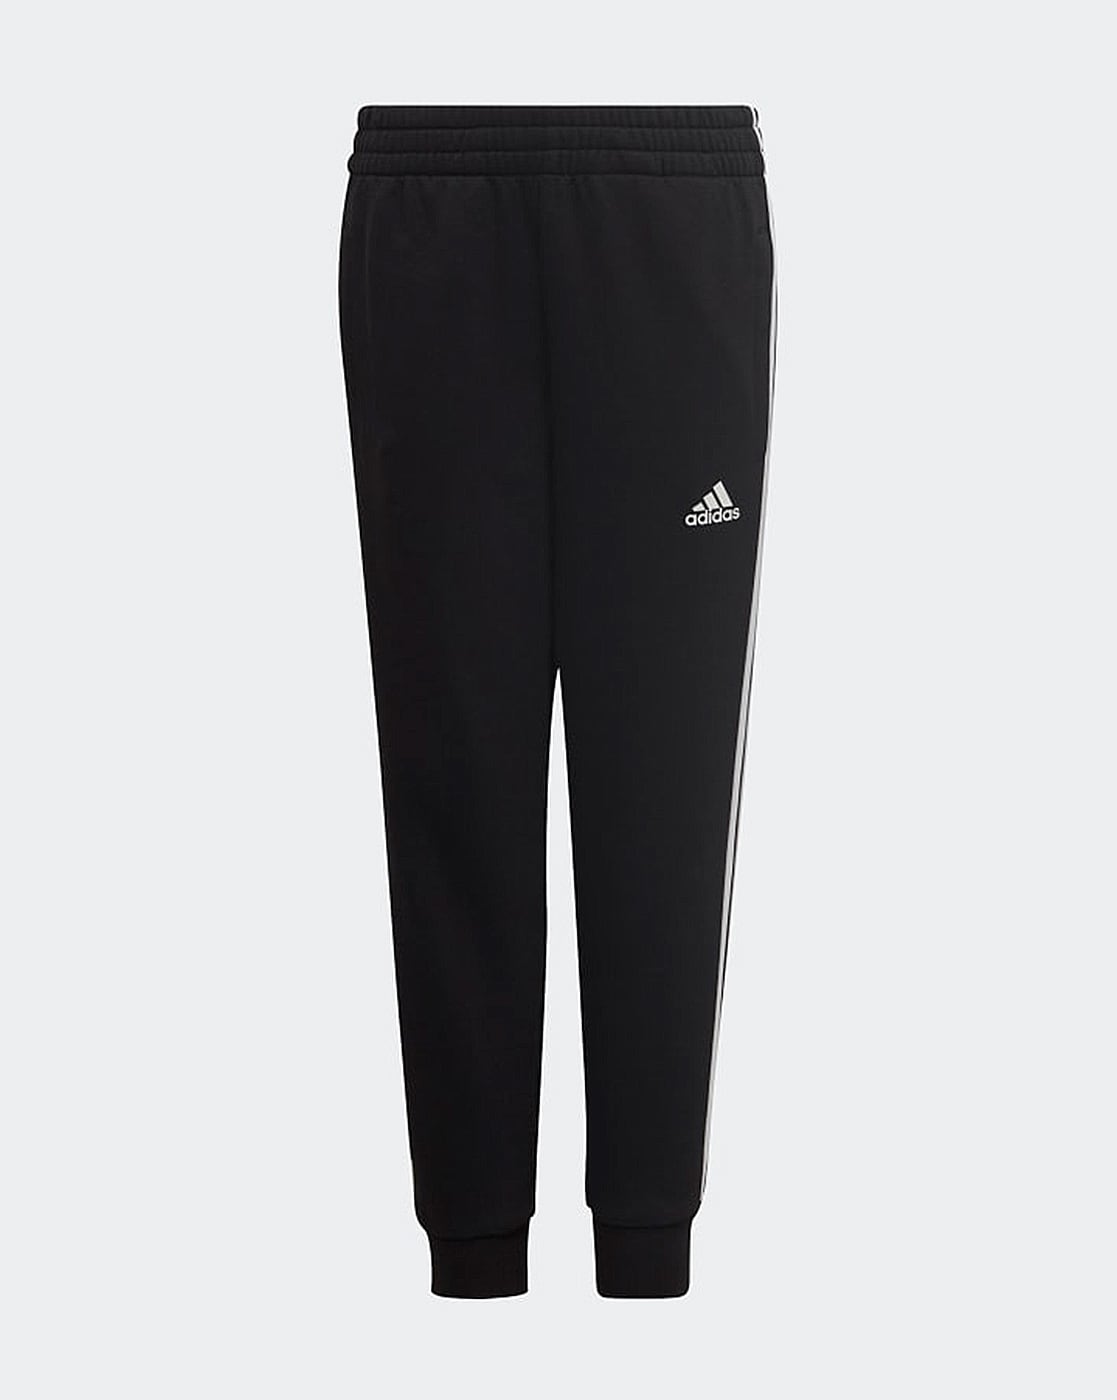 Boys Adidas Pants Size 5 Black & Orange | eBay